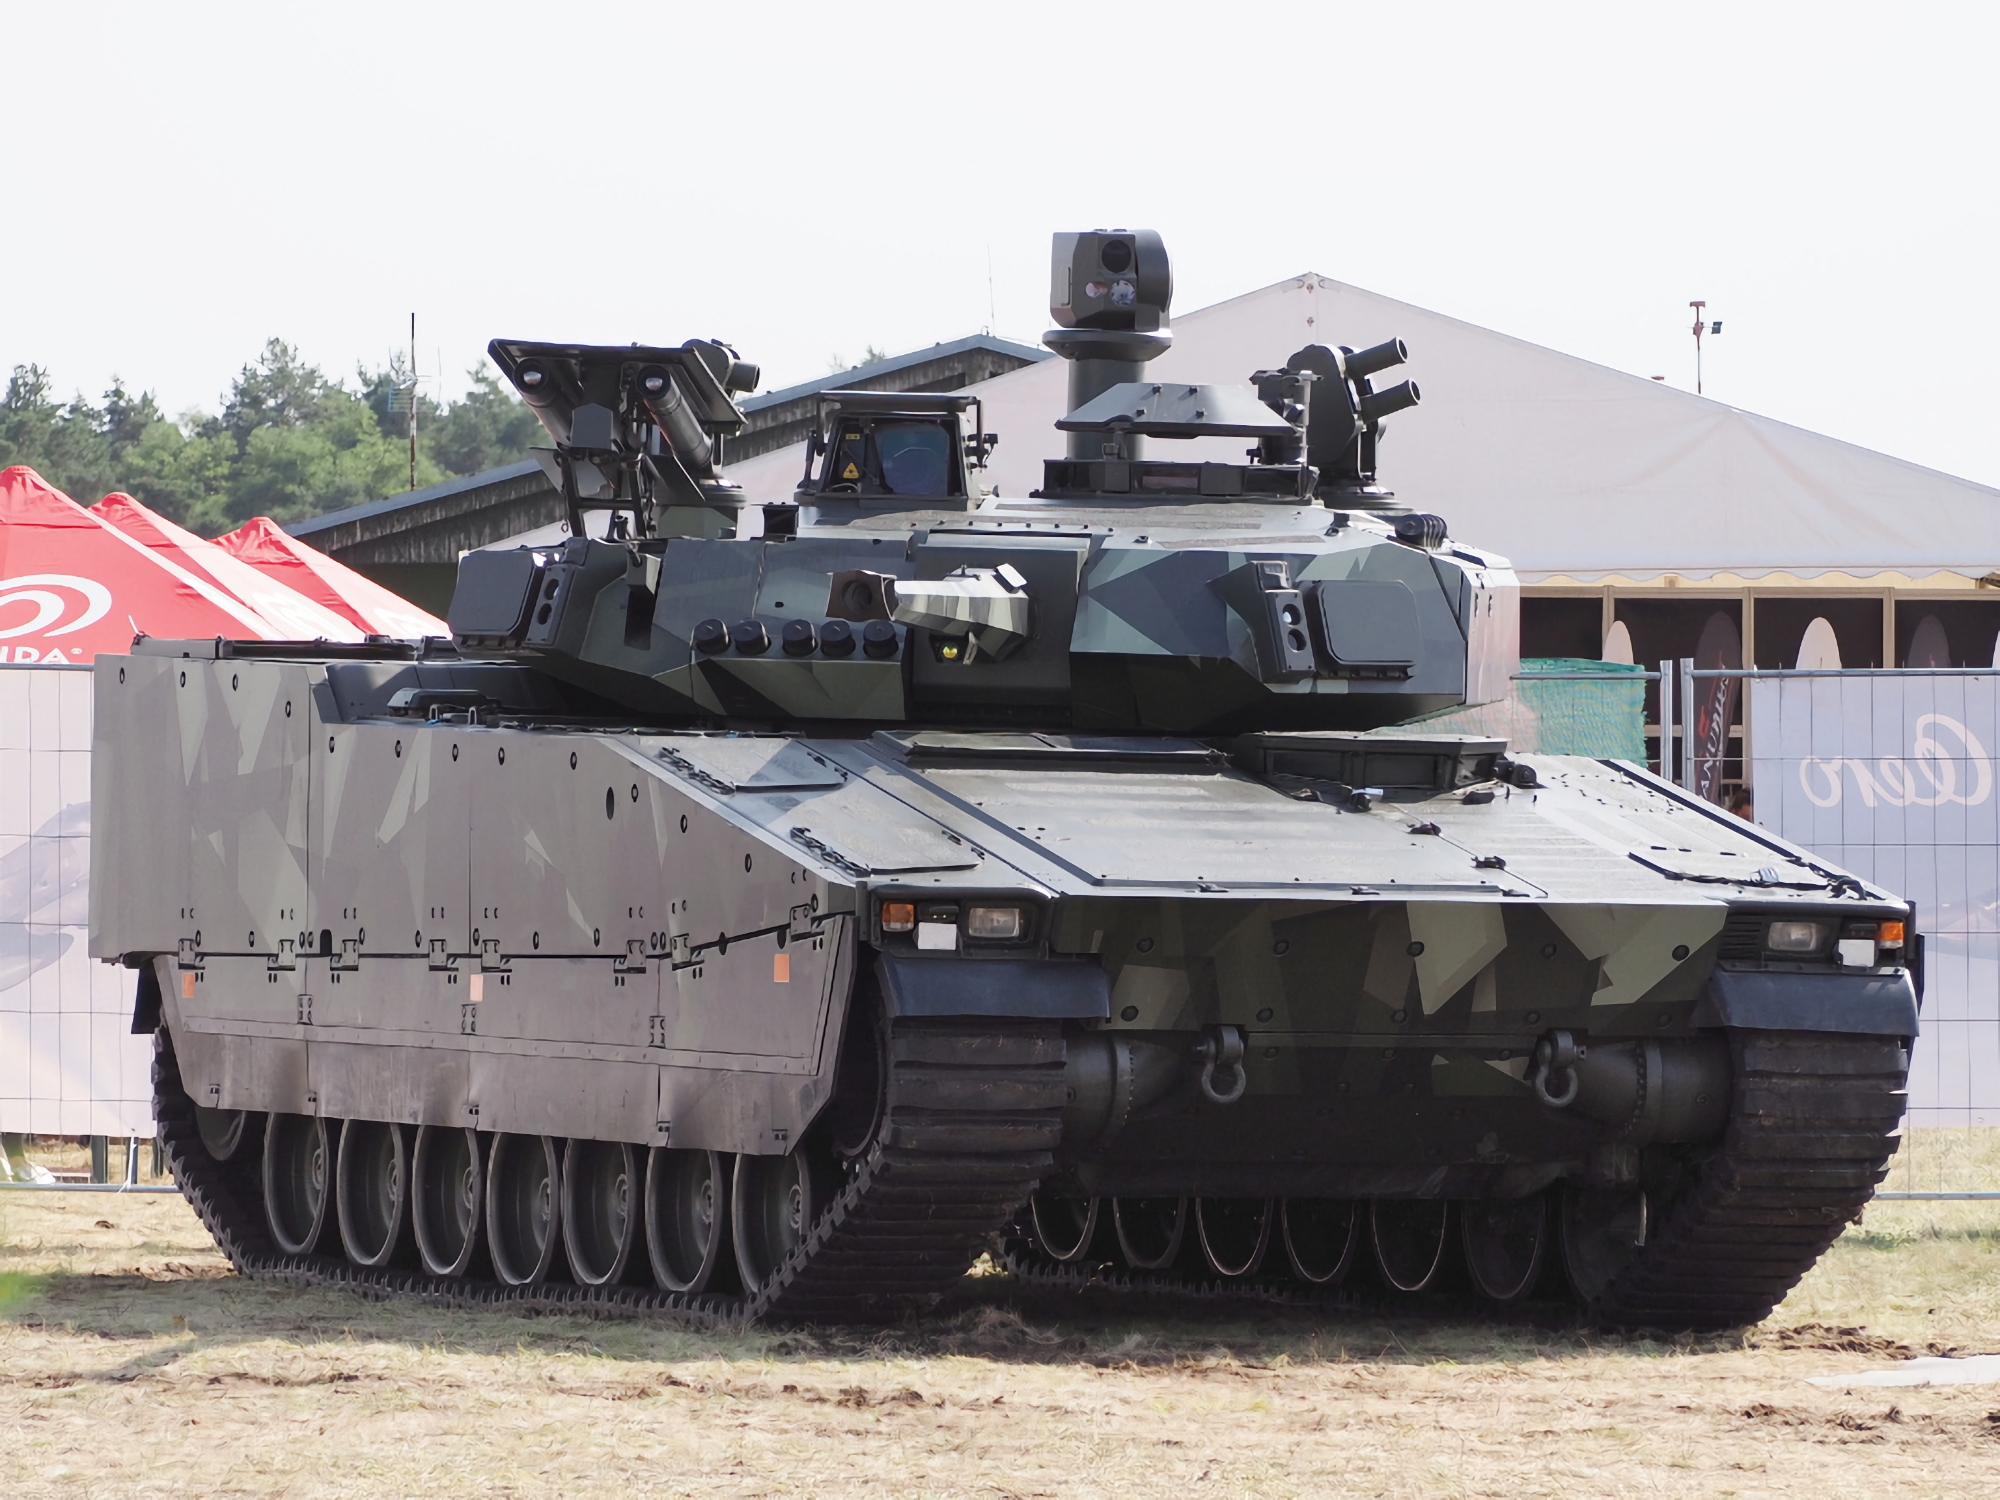 La Svezia acquista da BAE Systems un nuovo lotto di veicoli da combattimento di fanteria CV90 per l'Ucraina